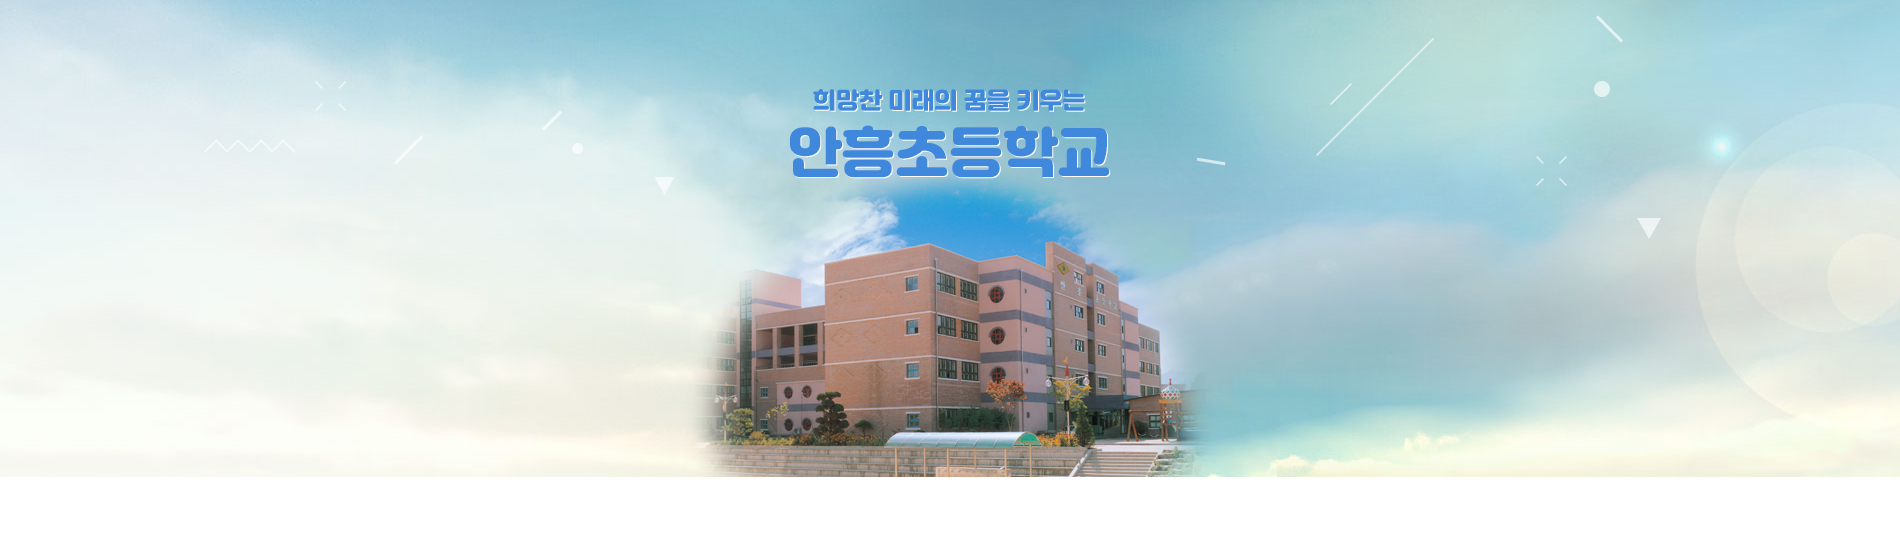 안흥초등학교